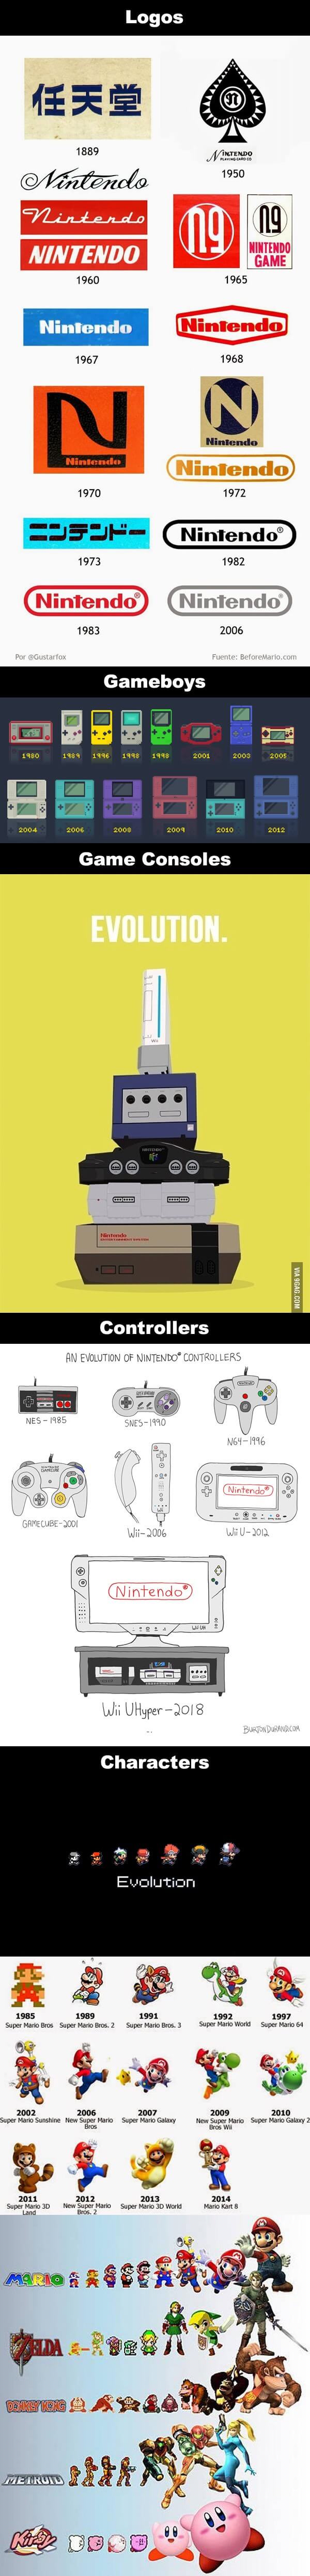 La increible evolucion de Nintendo en todos sus aspectos